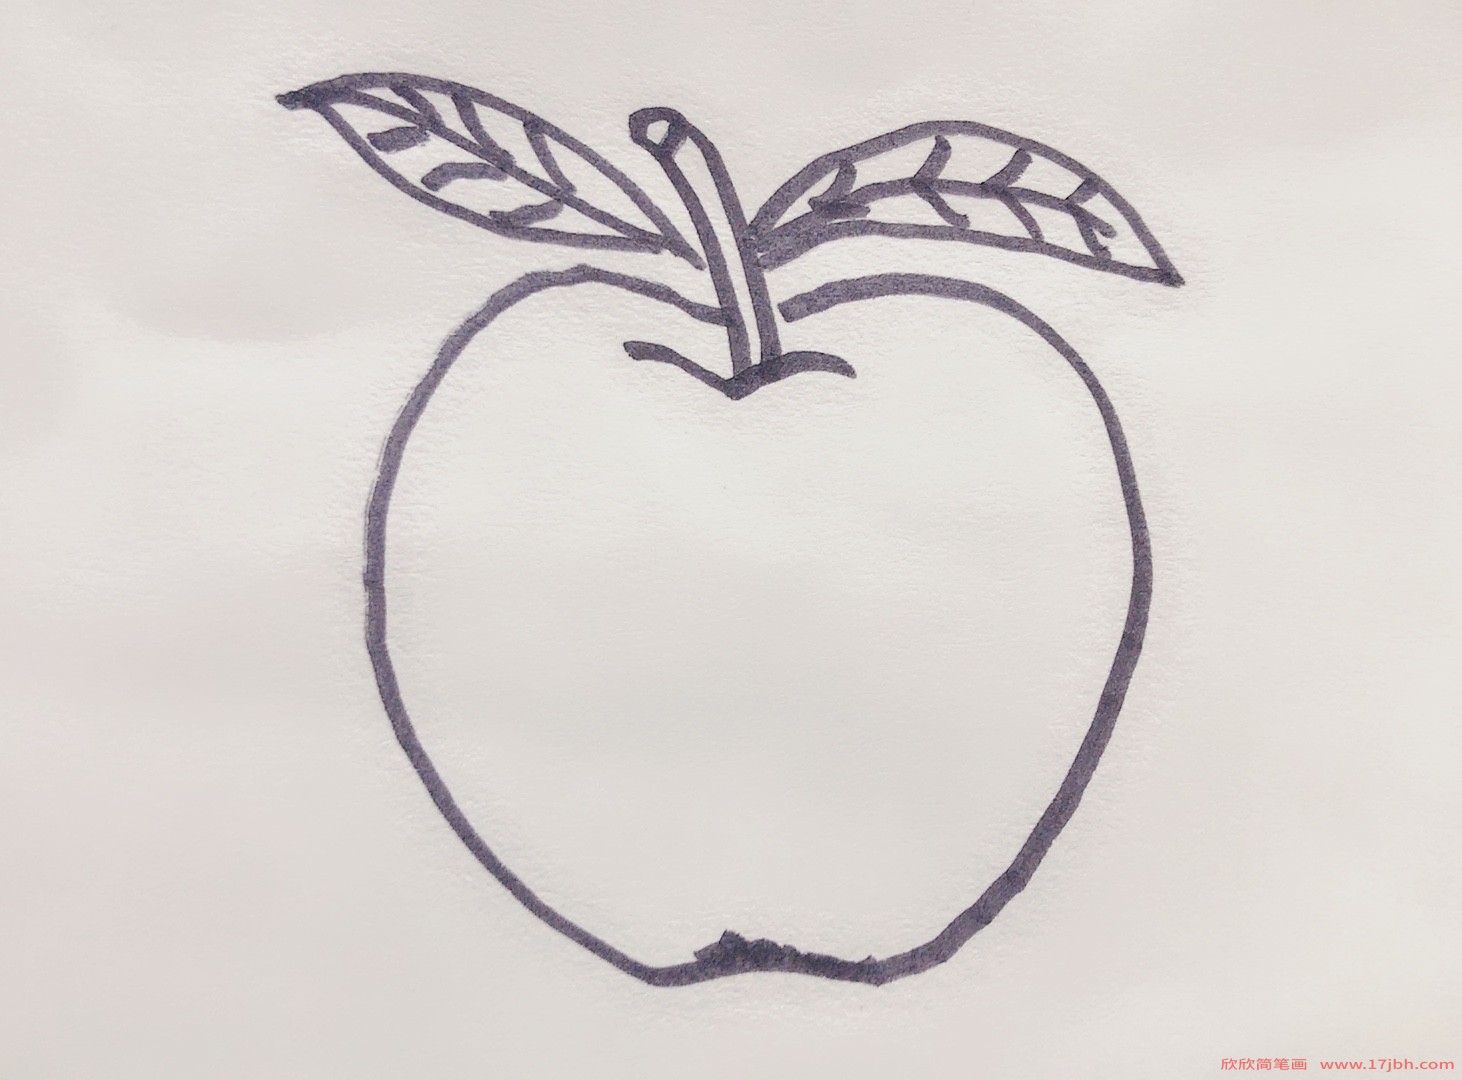 苹果的简笔画